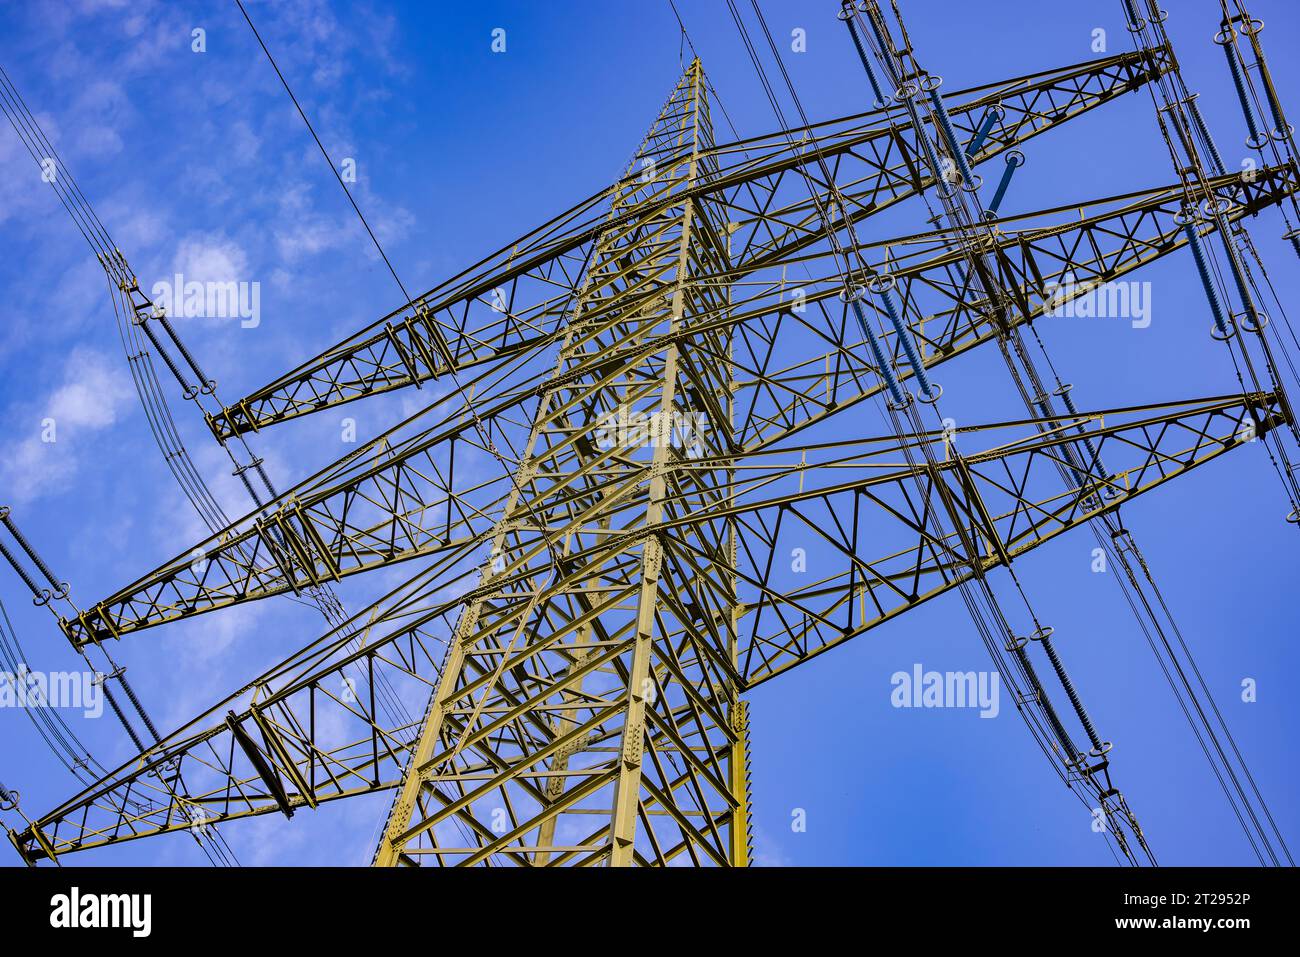 Stahlkonstruktion eines hohen Pylons zum Transport von Elektrizität über große Distanzen, diagonal von unten gesehen Stockfoto